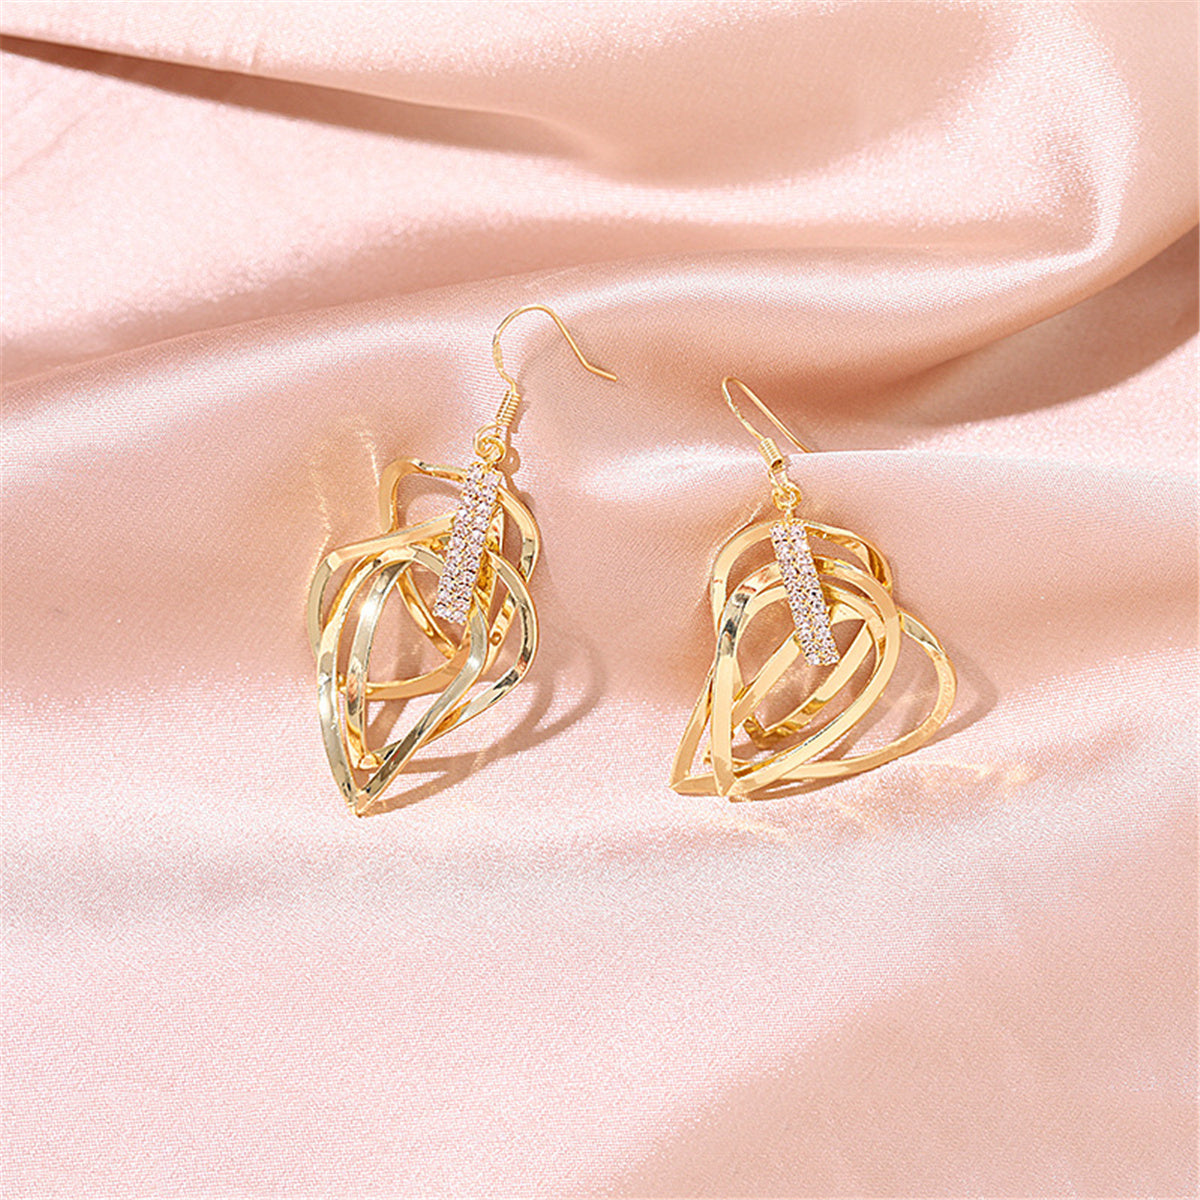 Cubic Zirconia & 18K Gold-Plated Stacked Open Teardrop Earrings